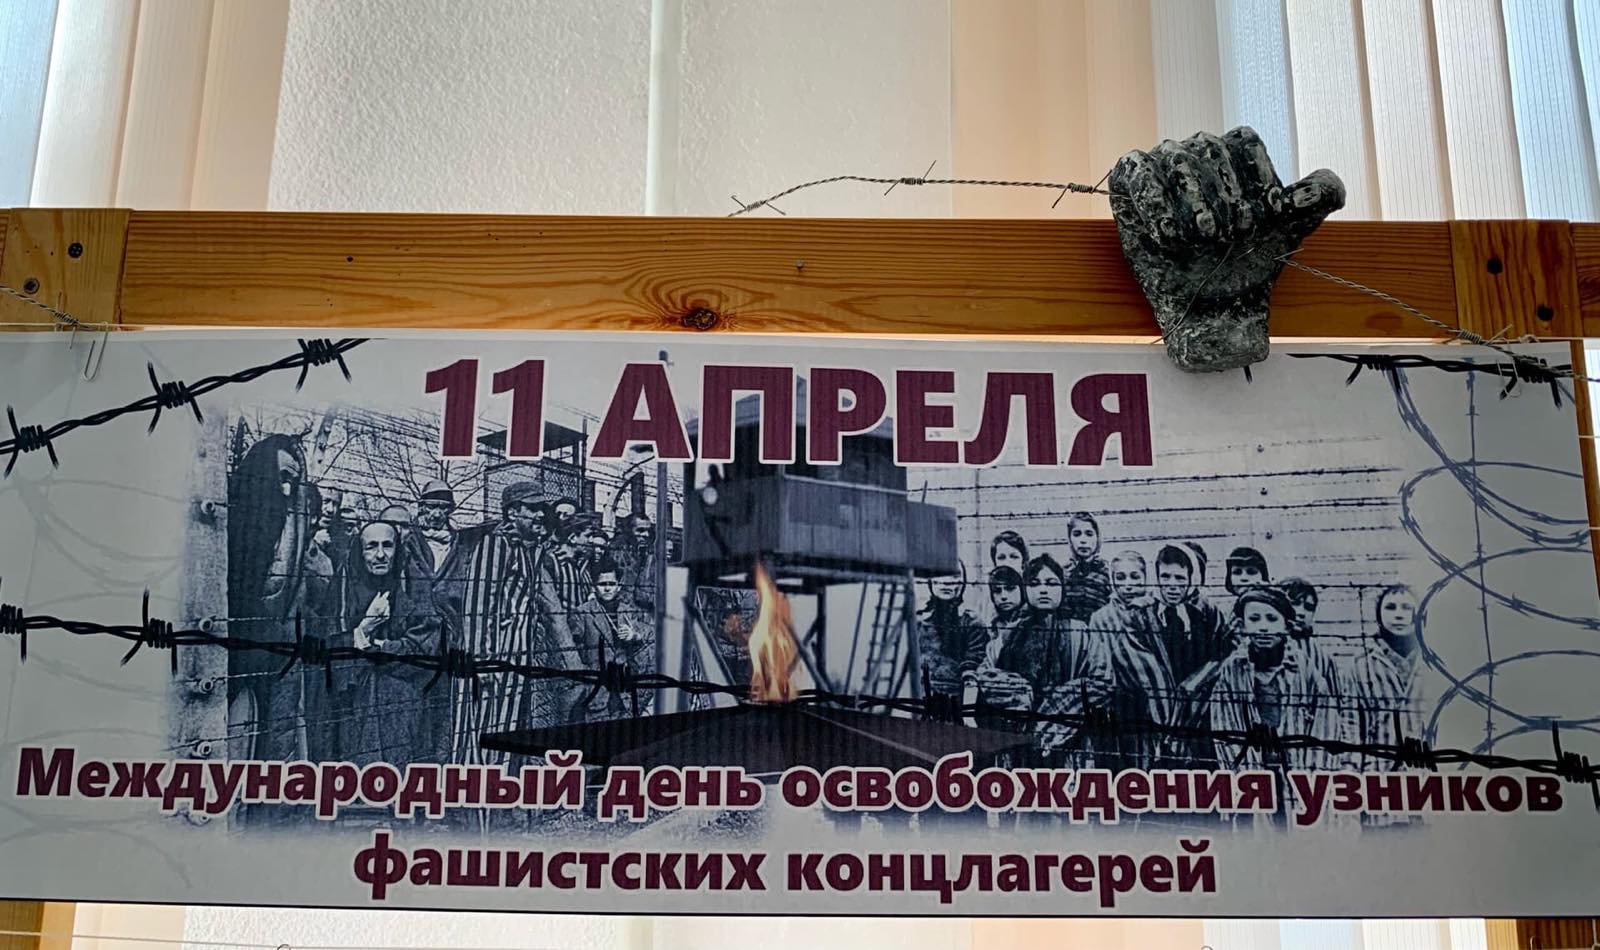 День освобождения узников фашистских лагерей